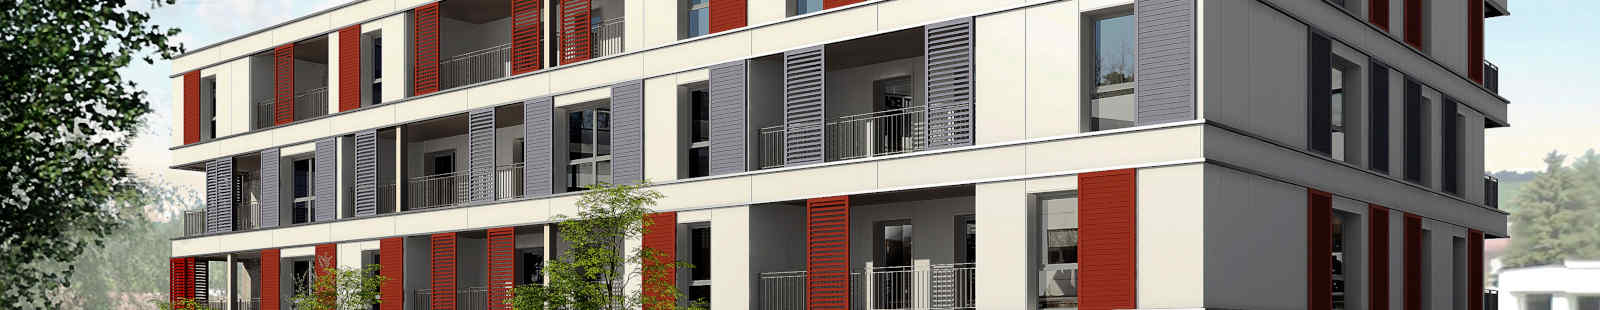 Une résidence de haute qualité technique et architecturale au centre-ville de Morteau